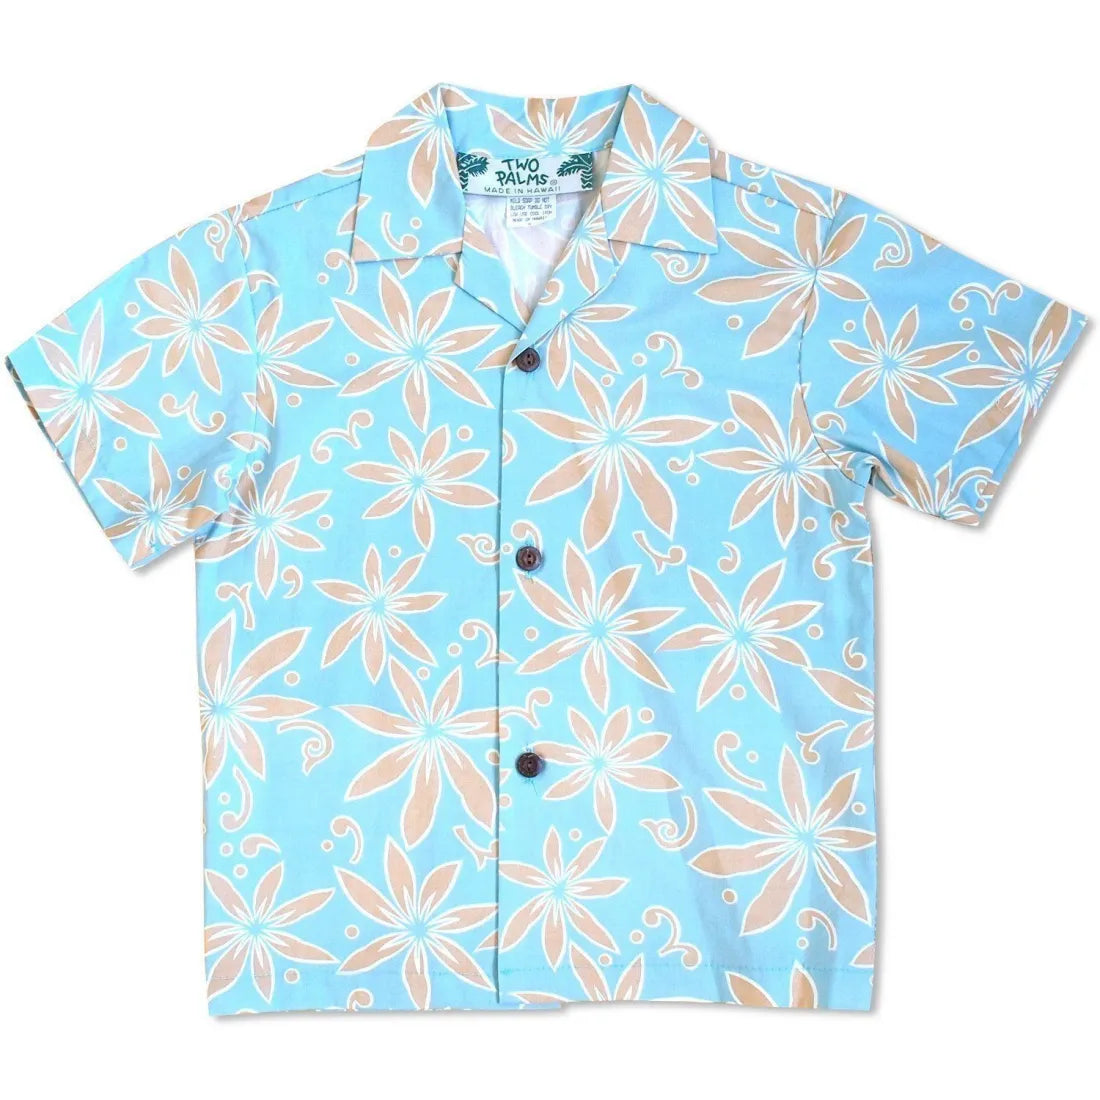 Lanikai Tan Hawaiian Boy Shirt - Made In Hawaii